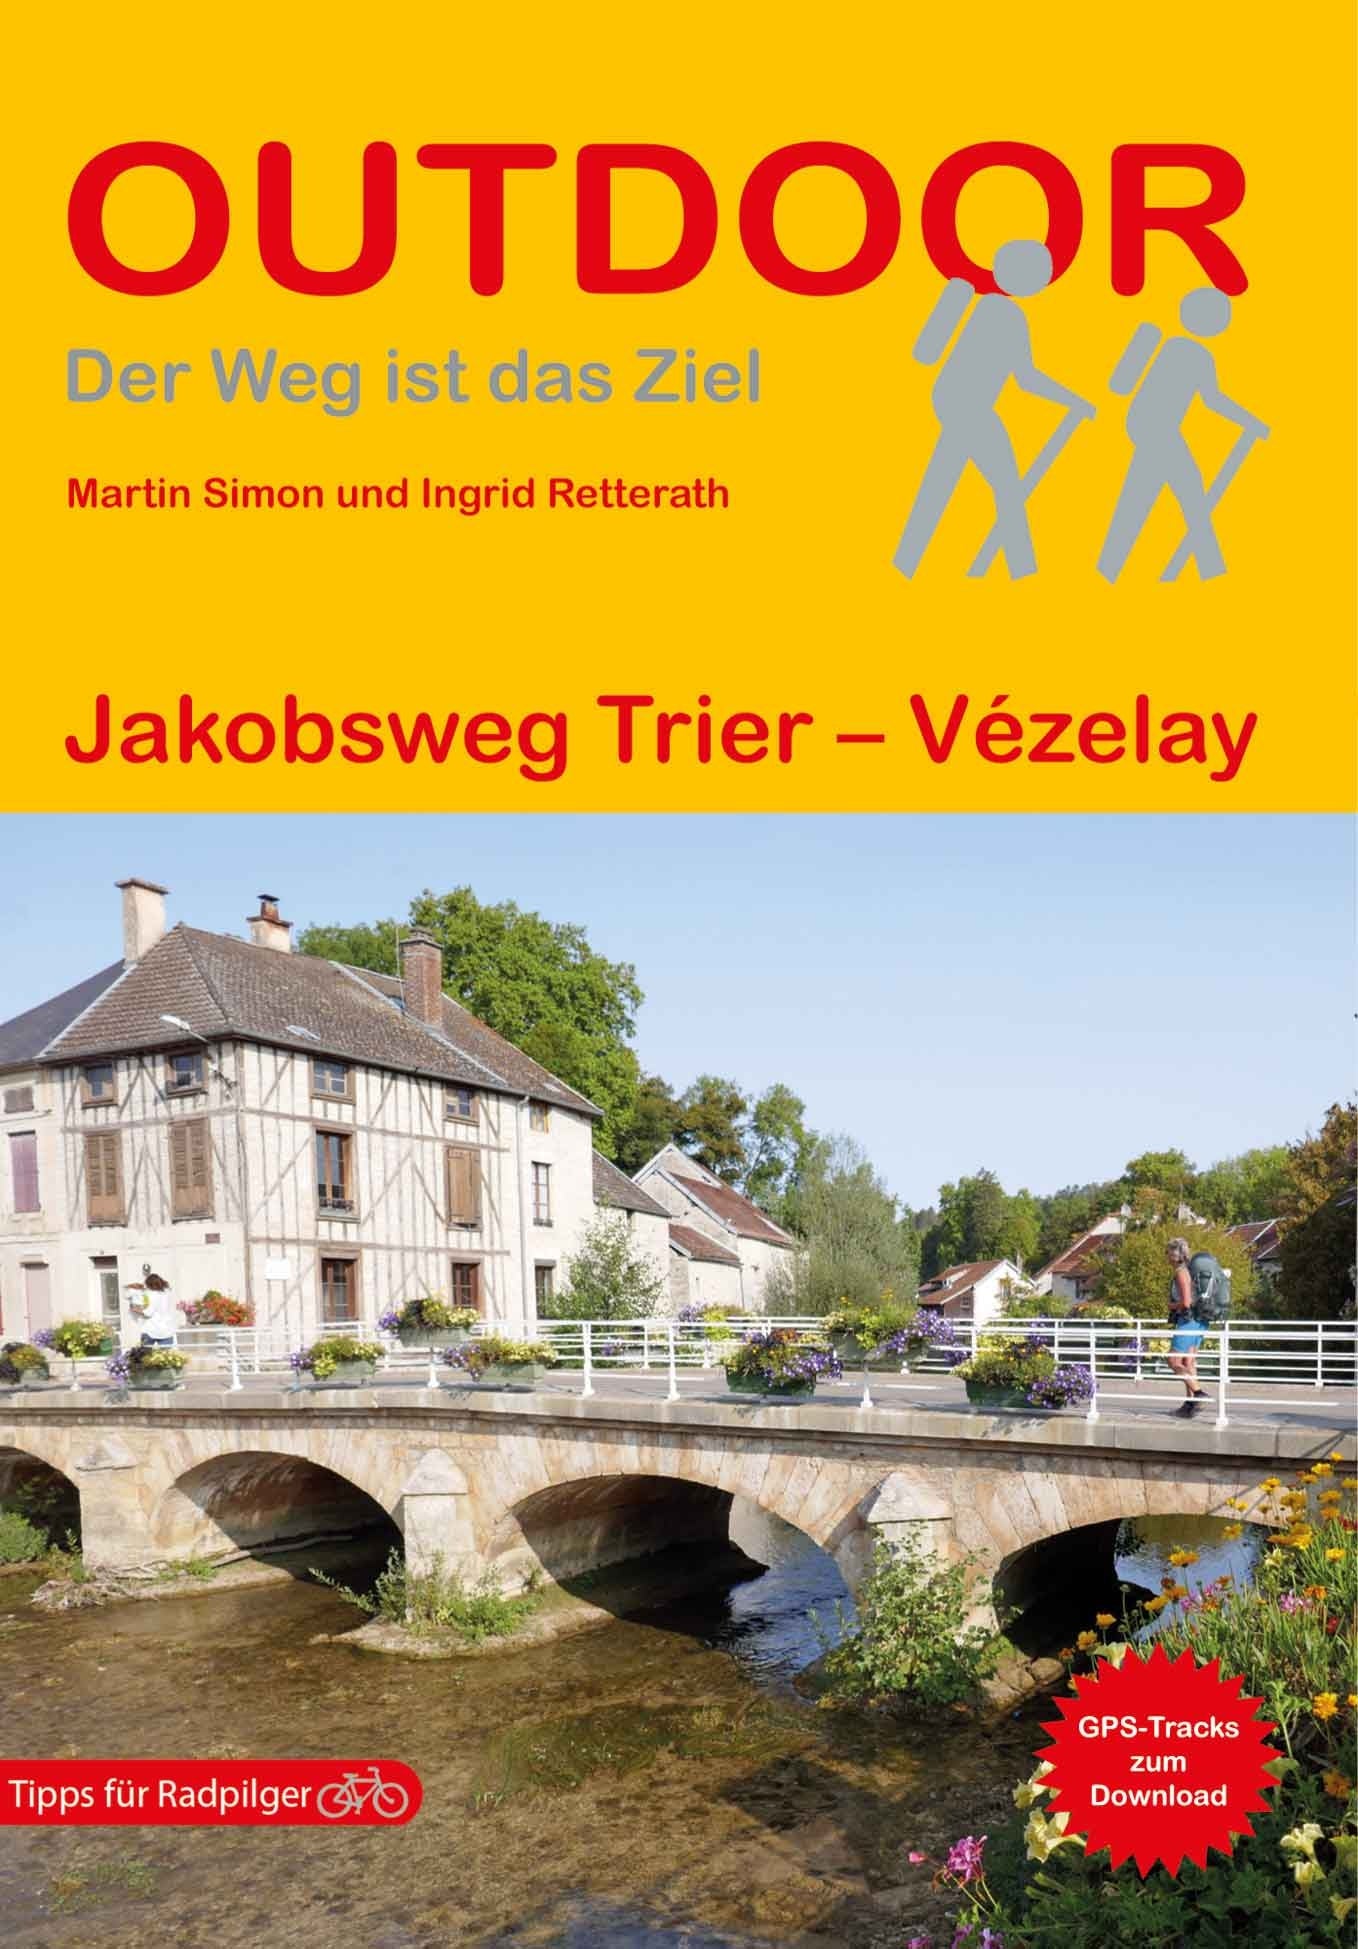 Deutschland/Frankreich: Jakobsweg von Trier - Vezalay (194)